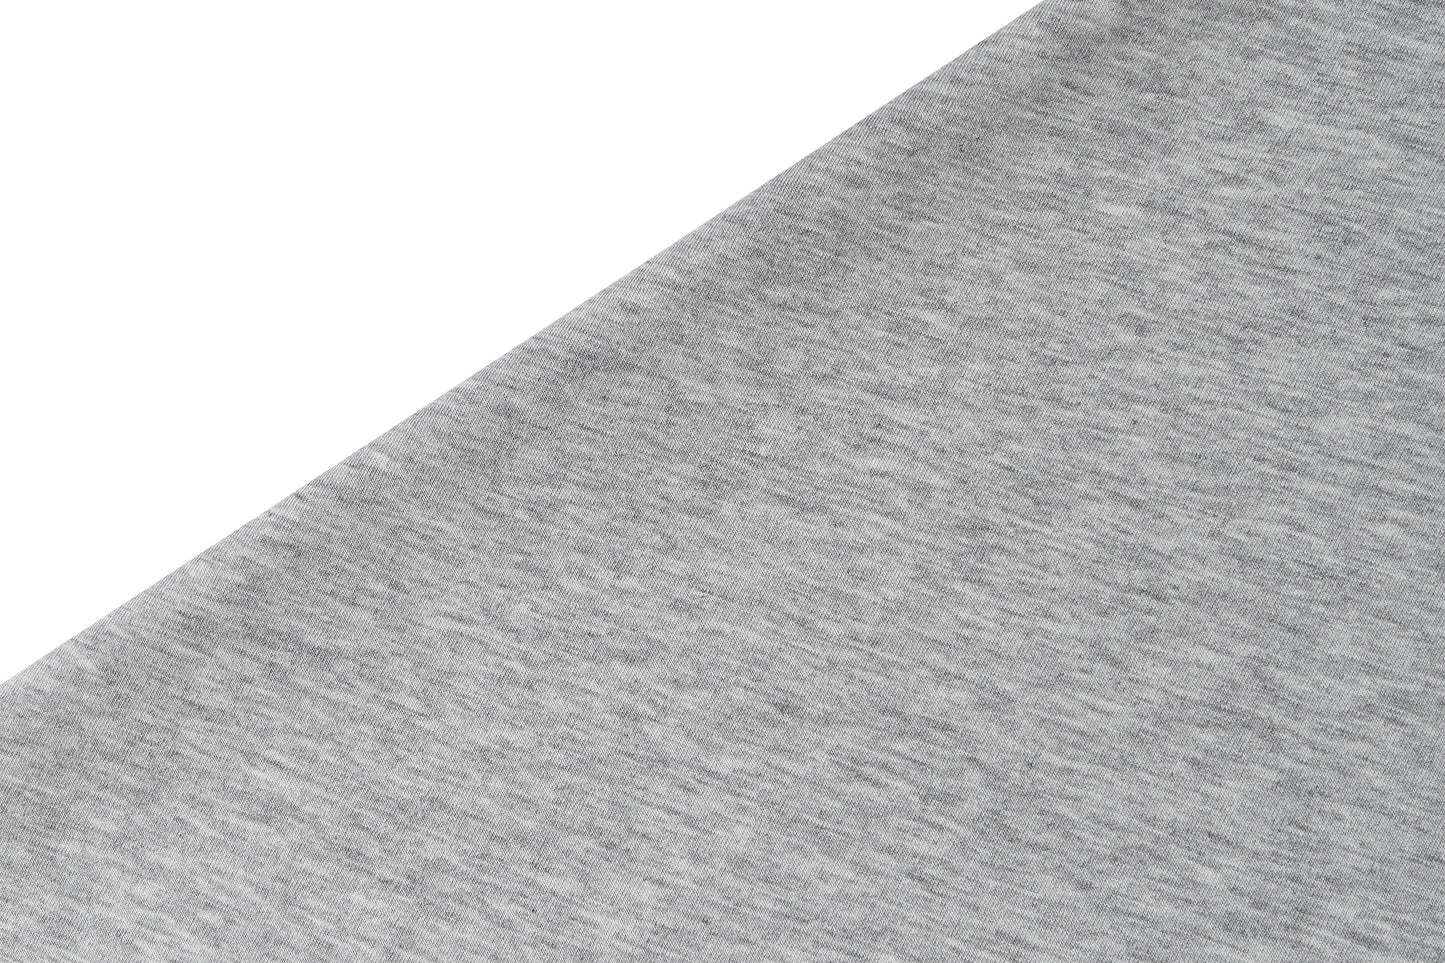 Basics Change Pad (Cotton, Large) - Melange Grey